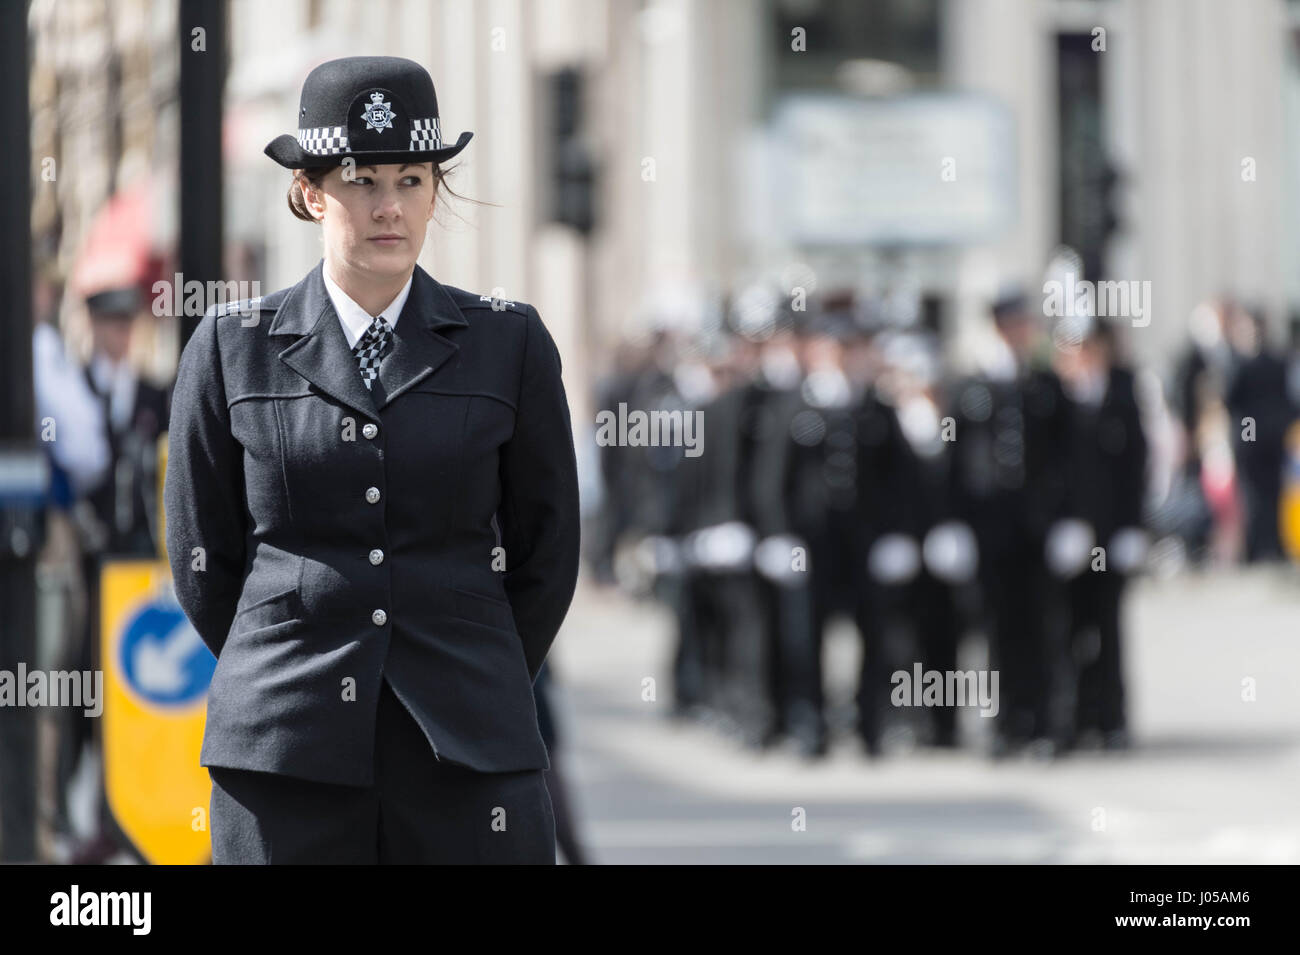 Londres, Royaume-Uni. 10 avr, 2017. Jour des funérailles de PC Keith Palmer qui a été tué à Westminster le 22 mars. Crédit : Guy Josse/Alamy Live News Banque D'Images